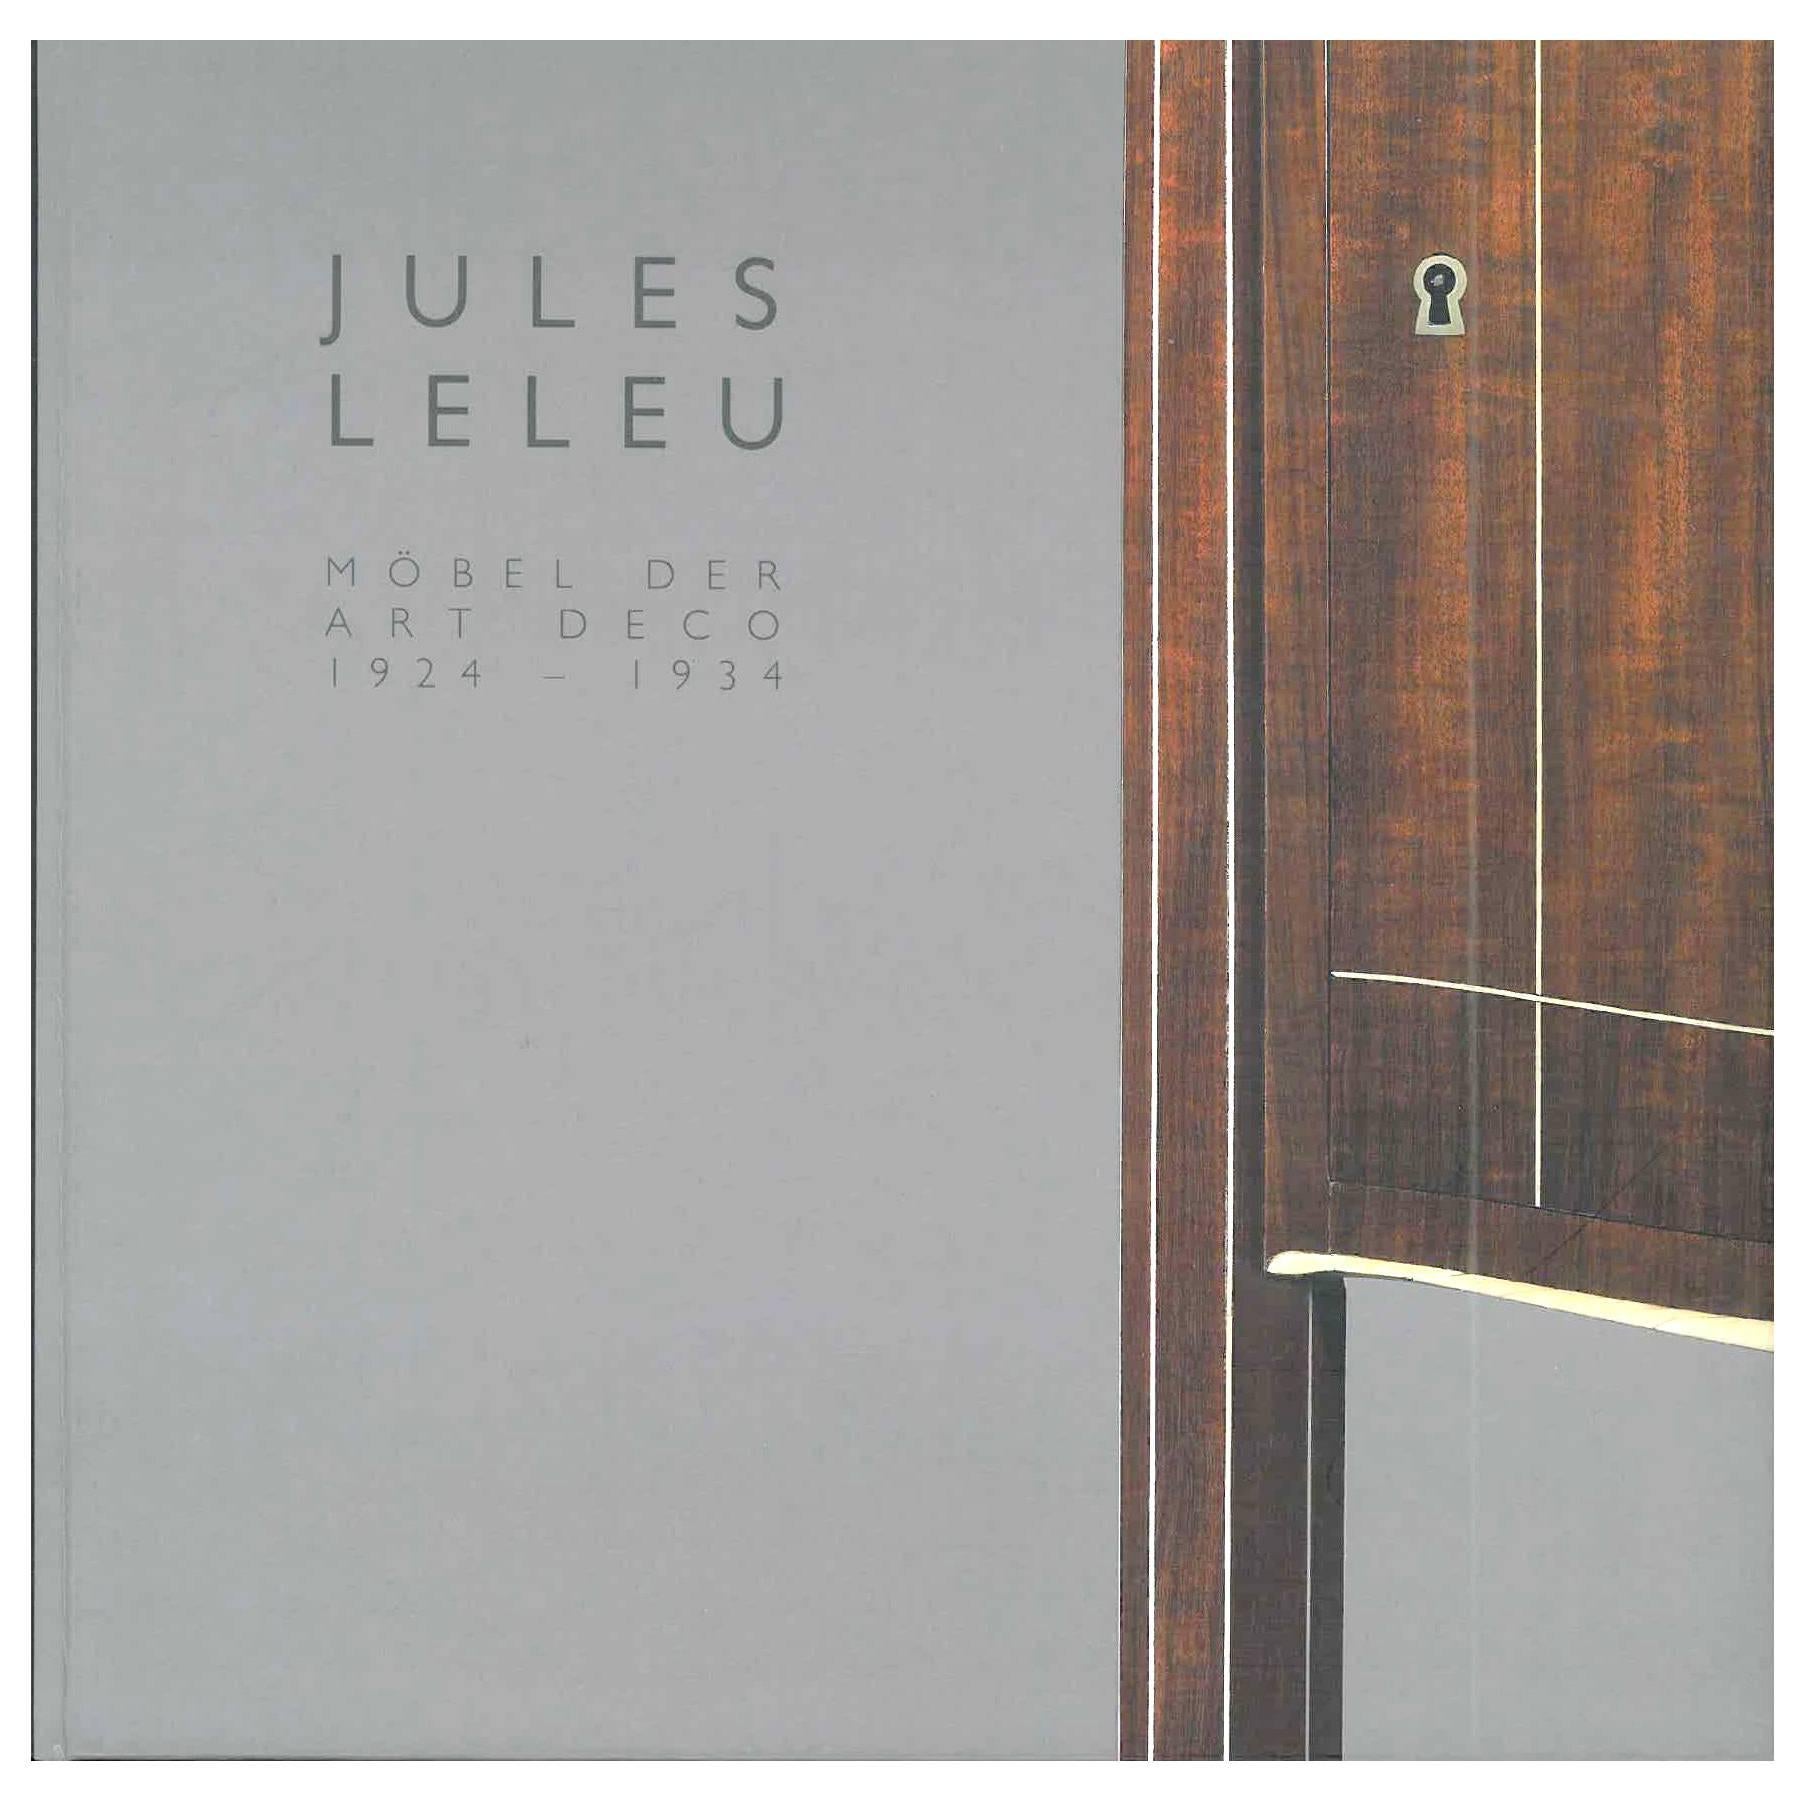 Jules Leleu, Mobel der Art Deco 1924-1934 'Book'